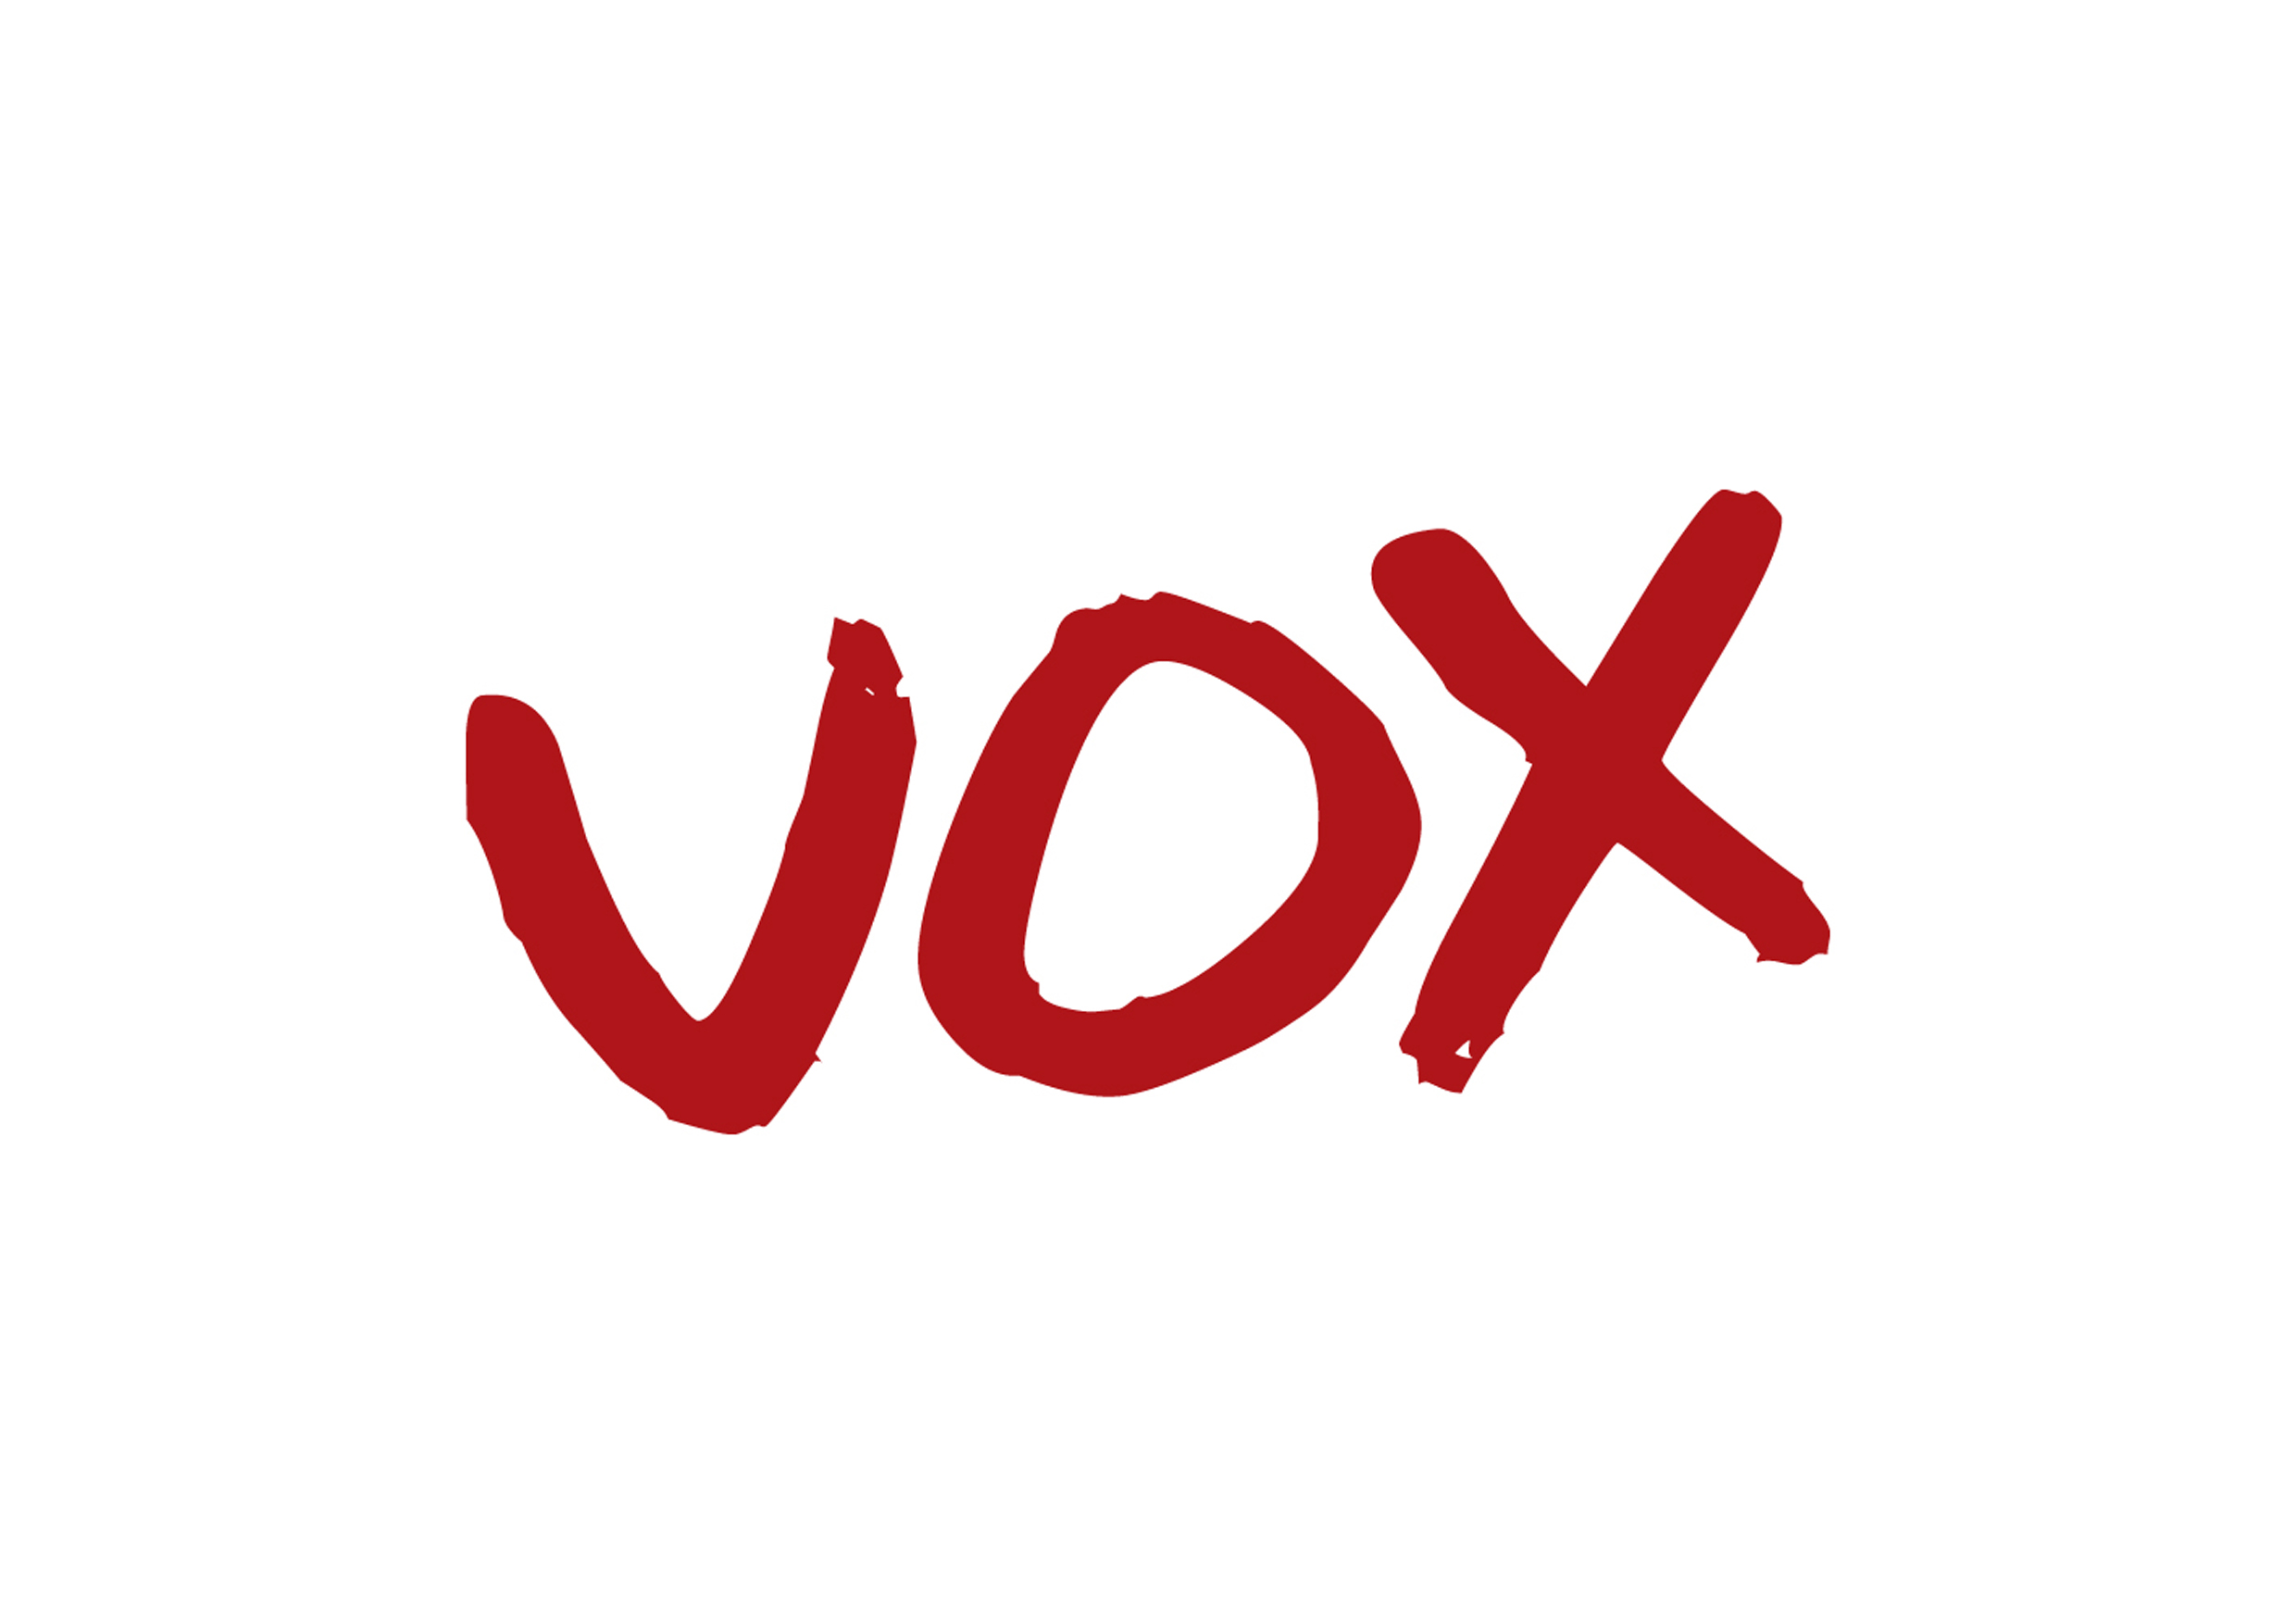 VOX YOUTH LOGO